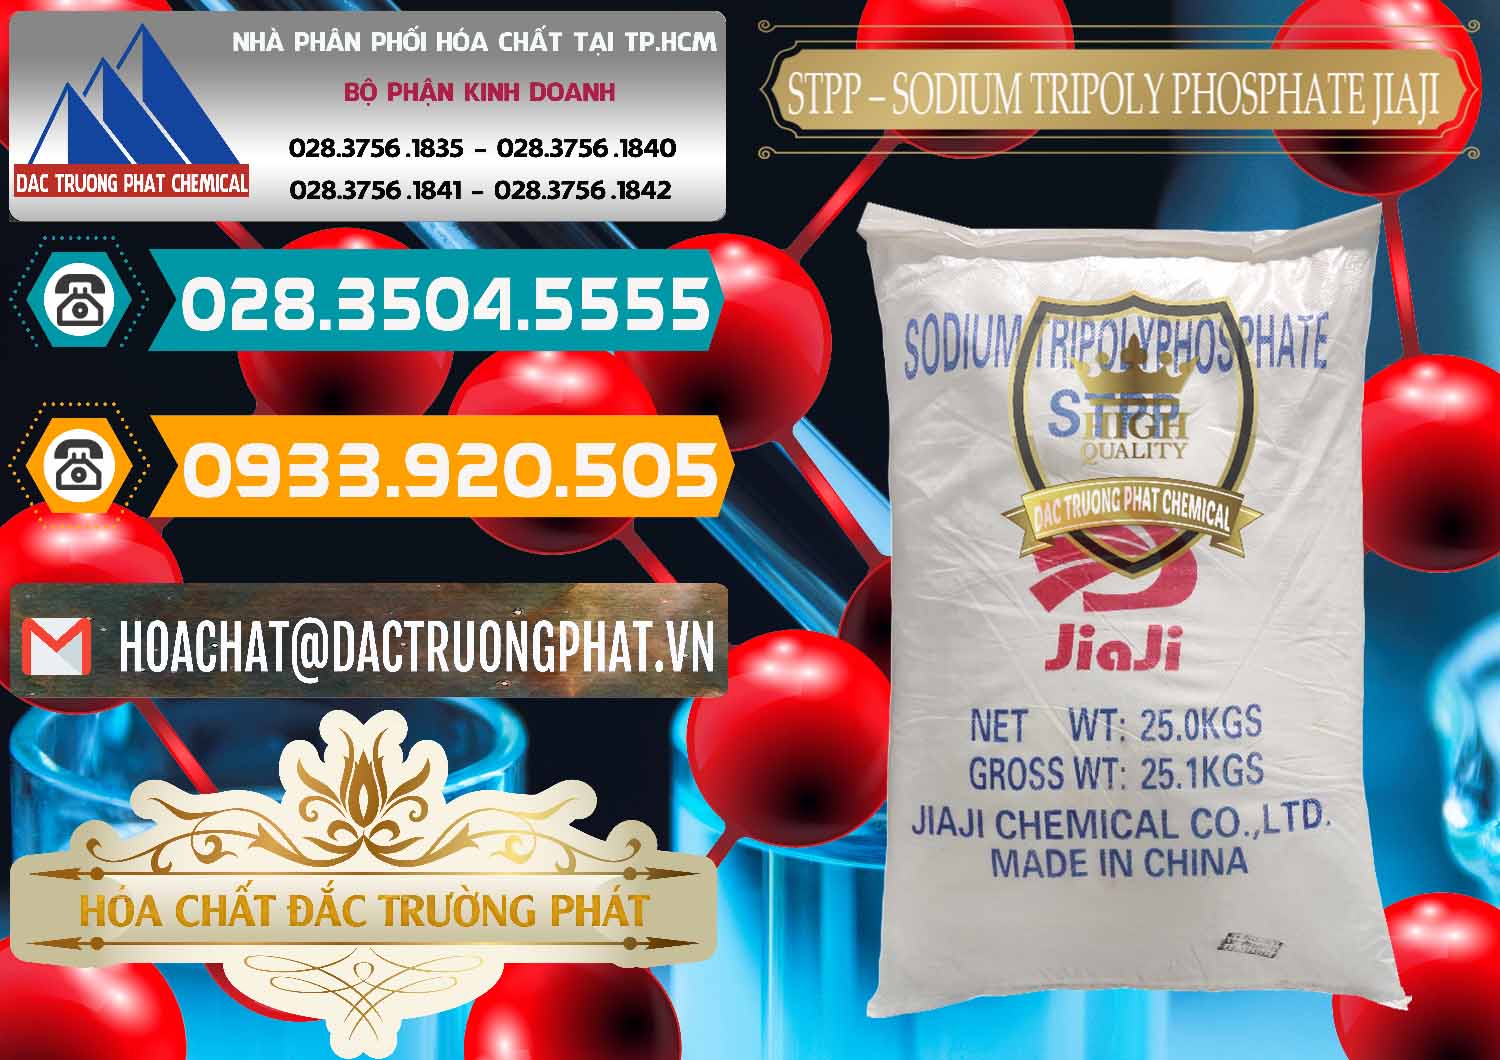 Cty chuyên cung ứng & bán Sodium Tripoly Phosphate - STPP Jiaji Trung Quốc China - 0154 - Chuyên phân phối & kinh doanh hóa chất tại TP.HCM - congtyhoachat.vn